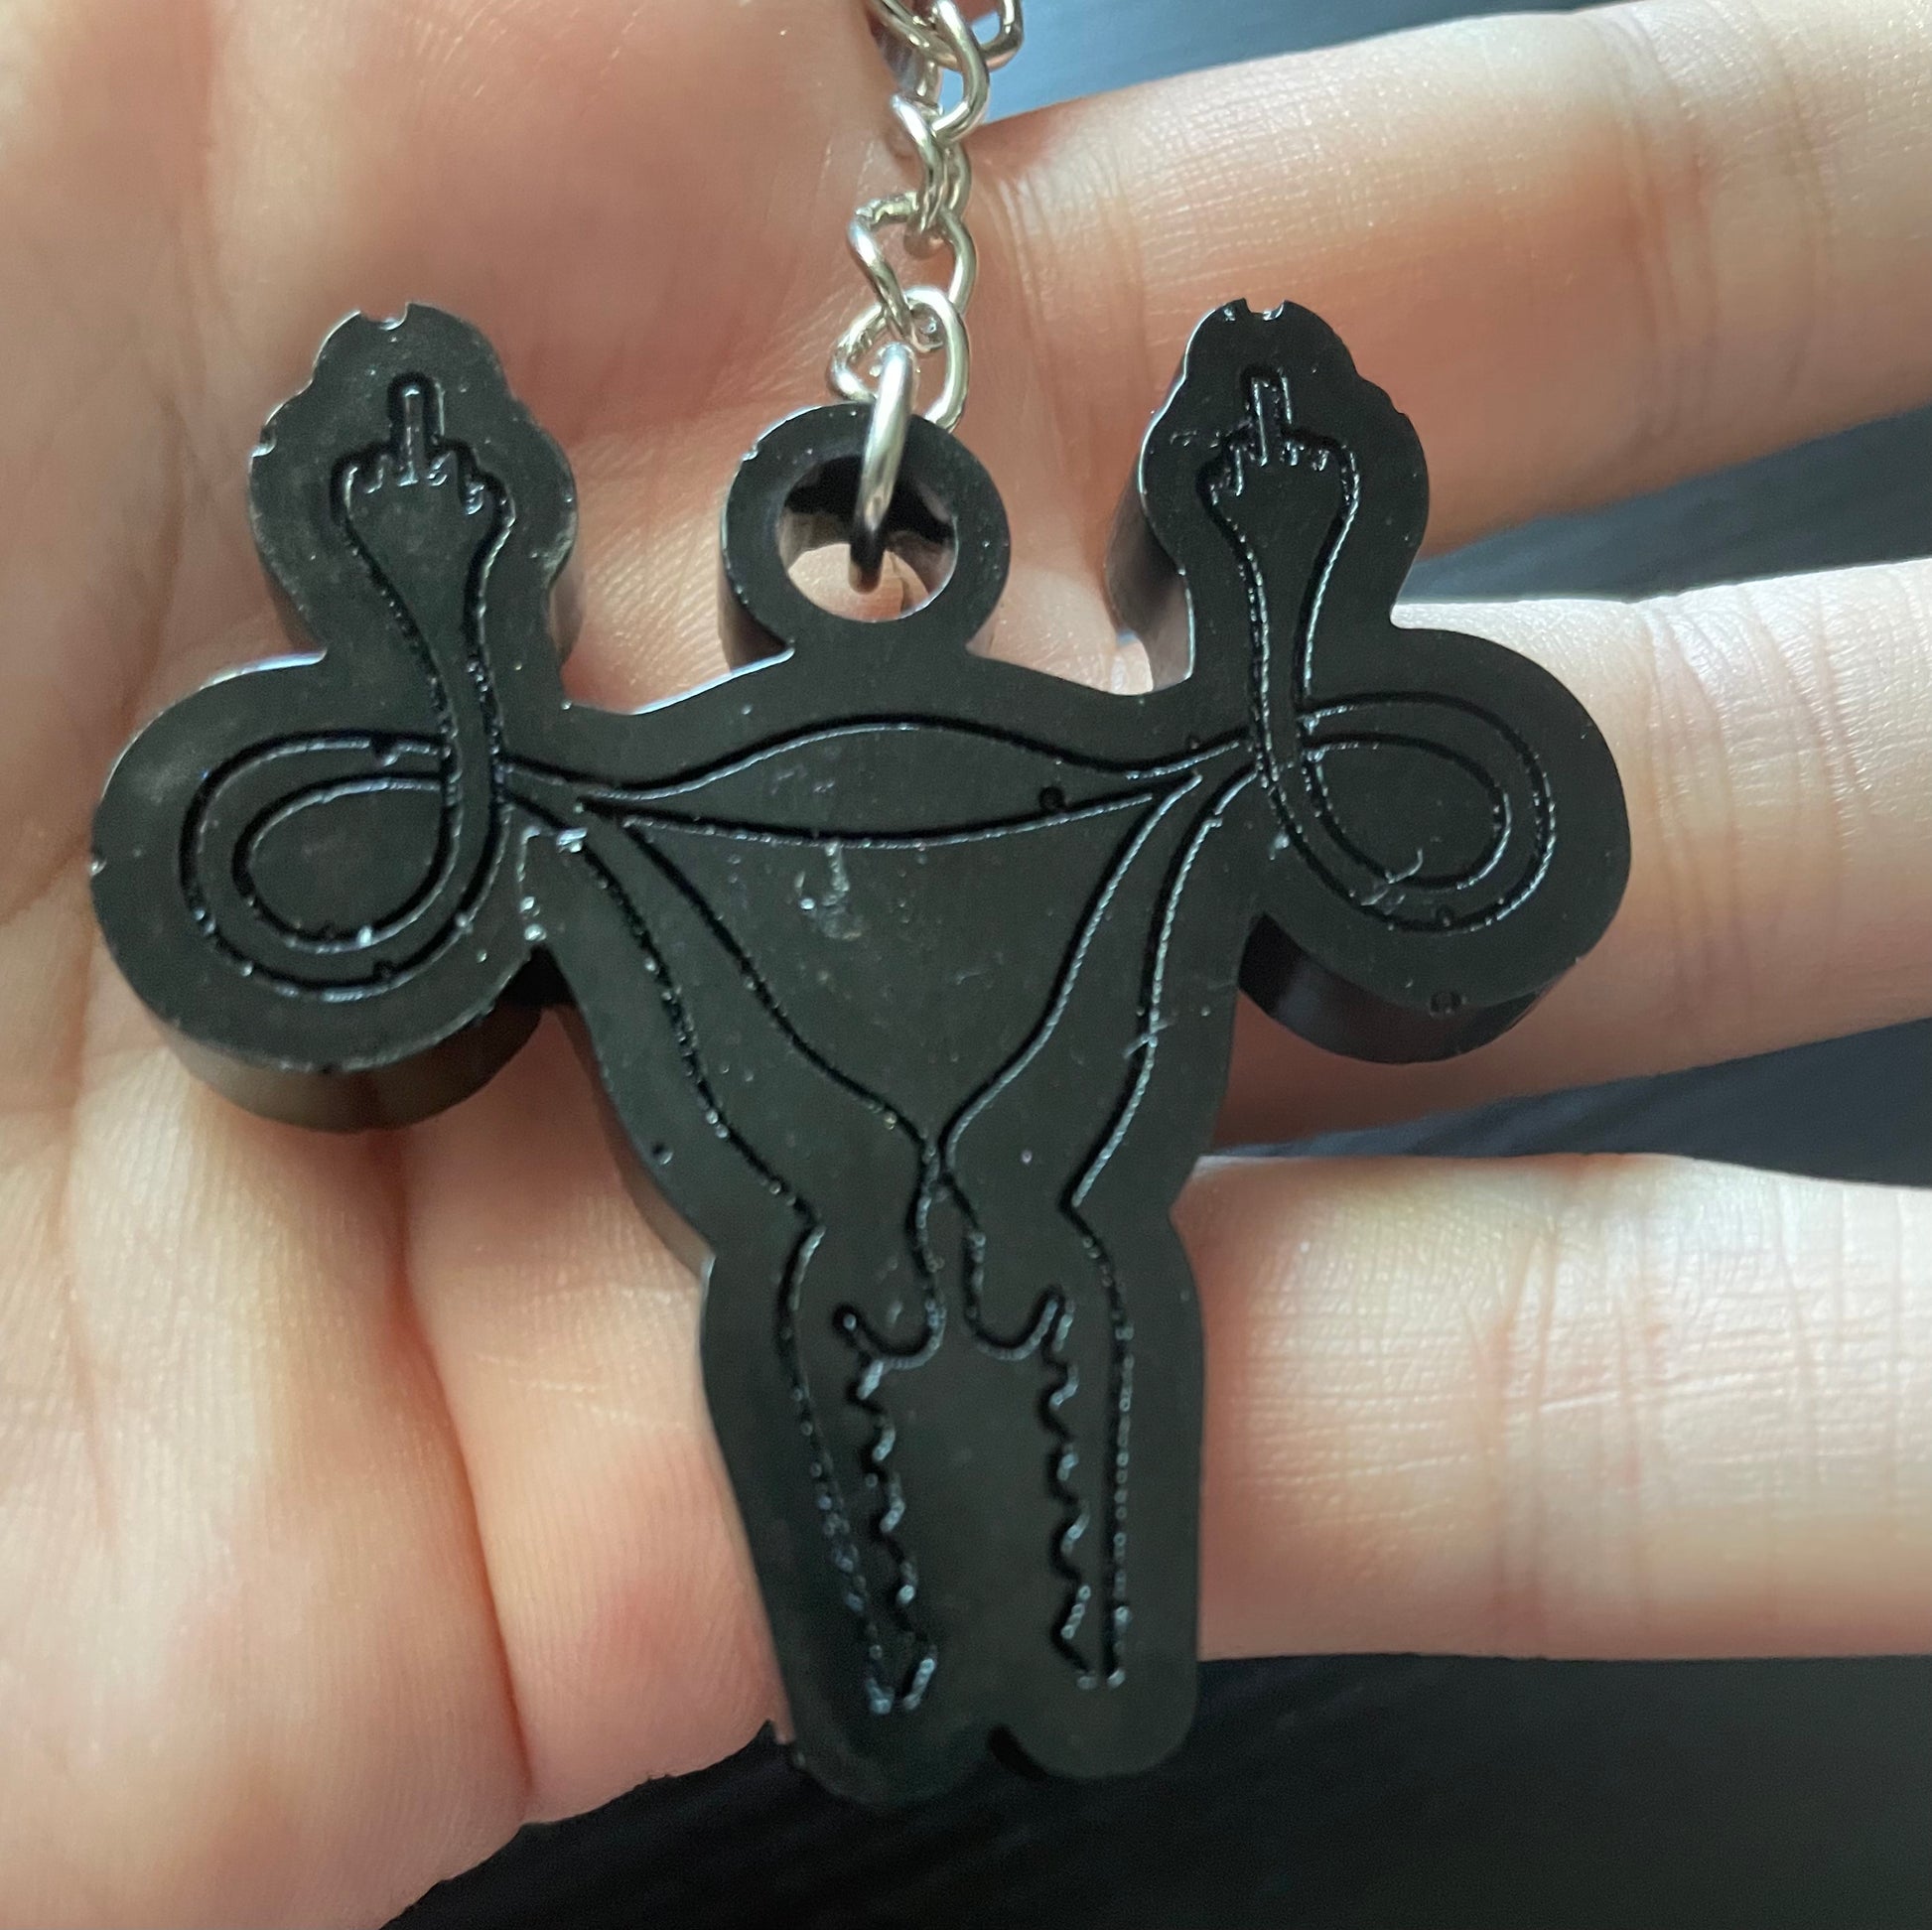 Black angry uterus keychain